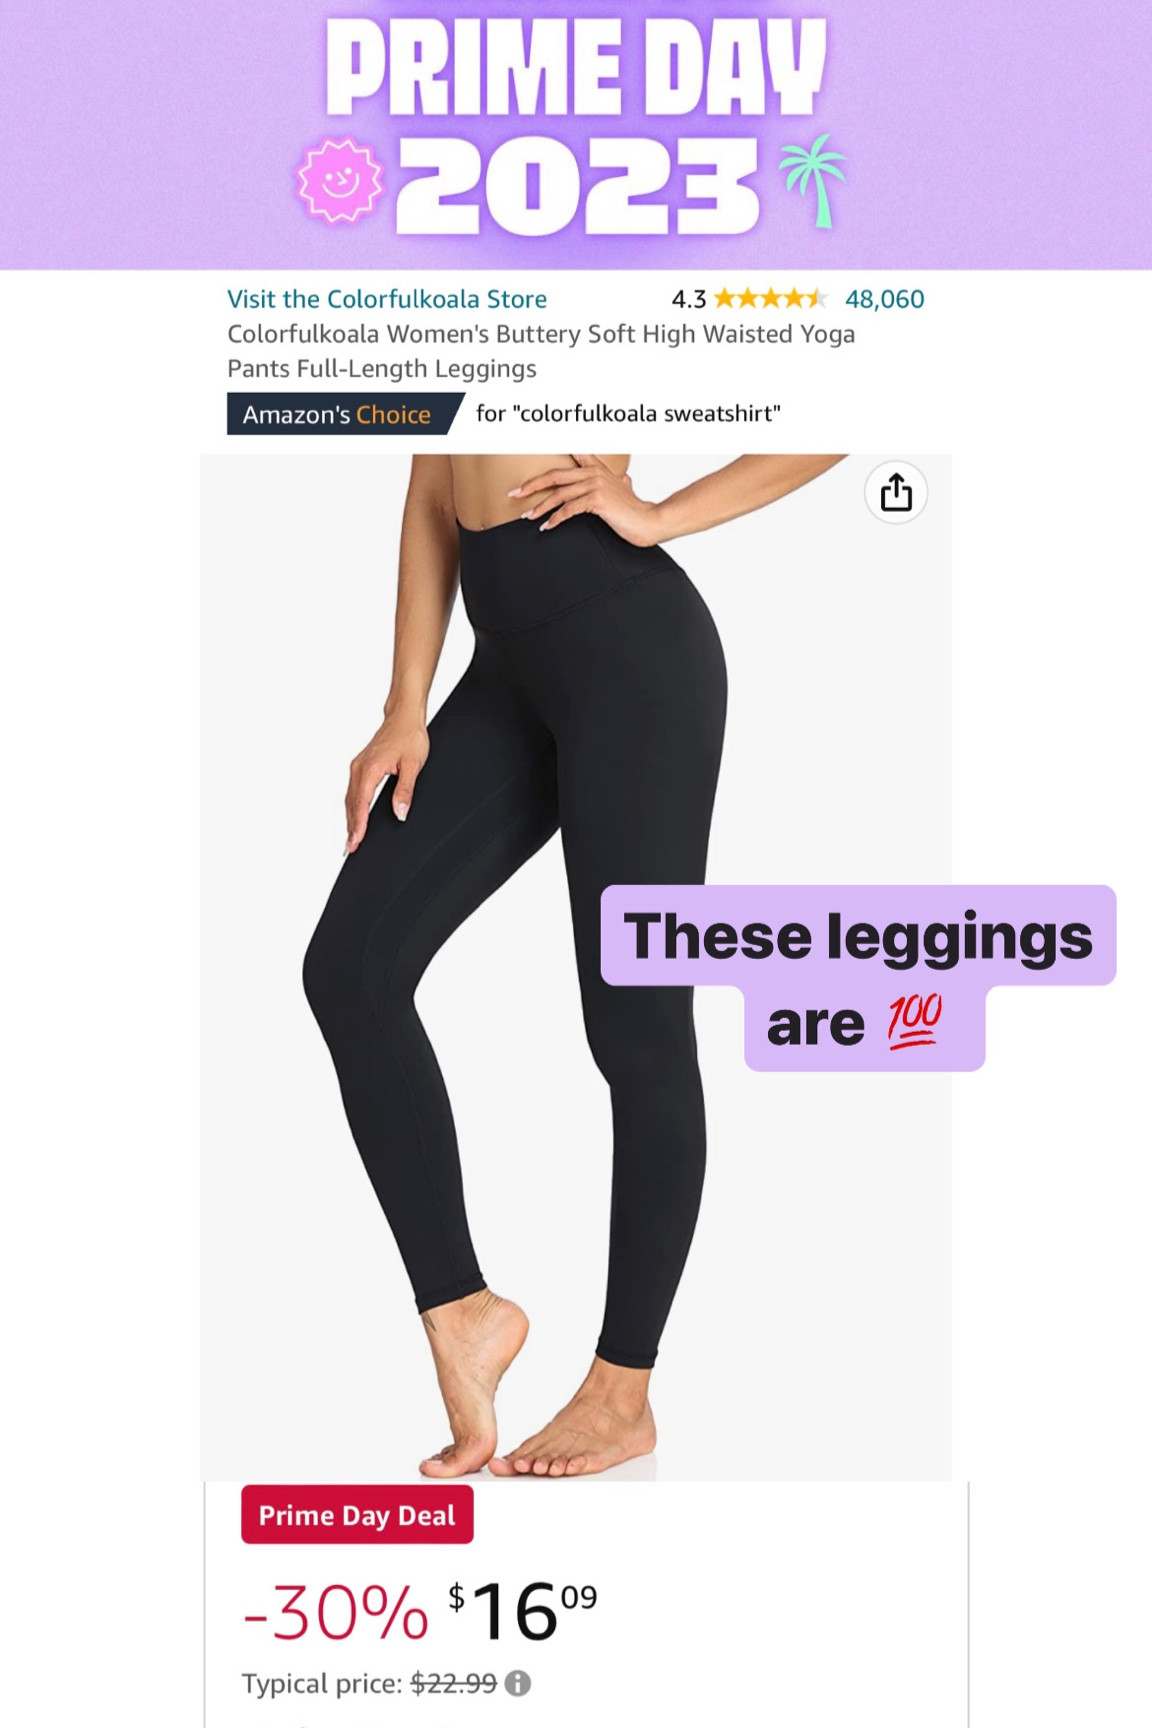 Women's Buttery Soft High Waisted Yoga Pants Full-Length Leggings